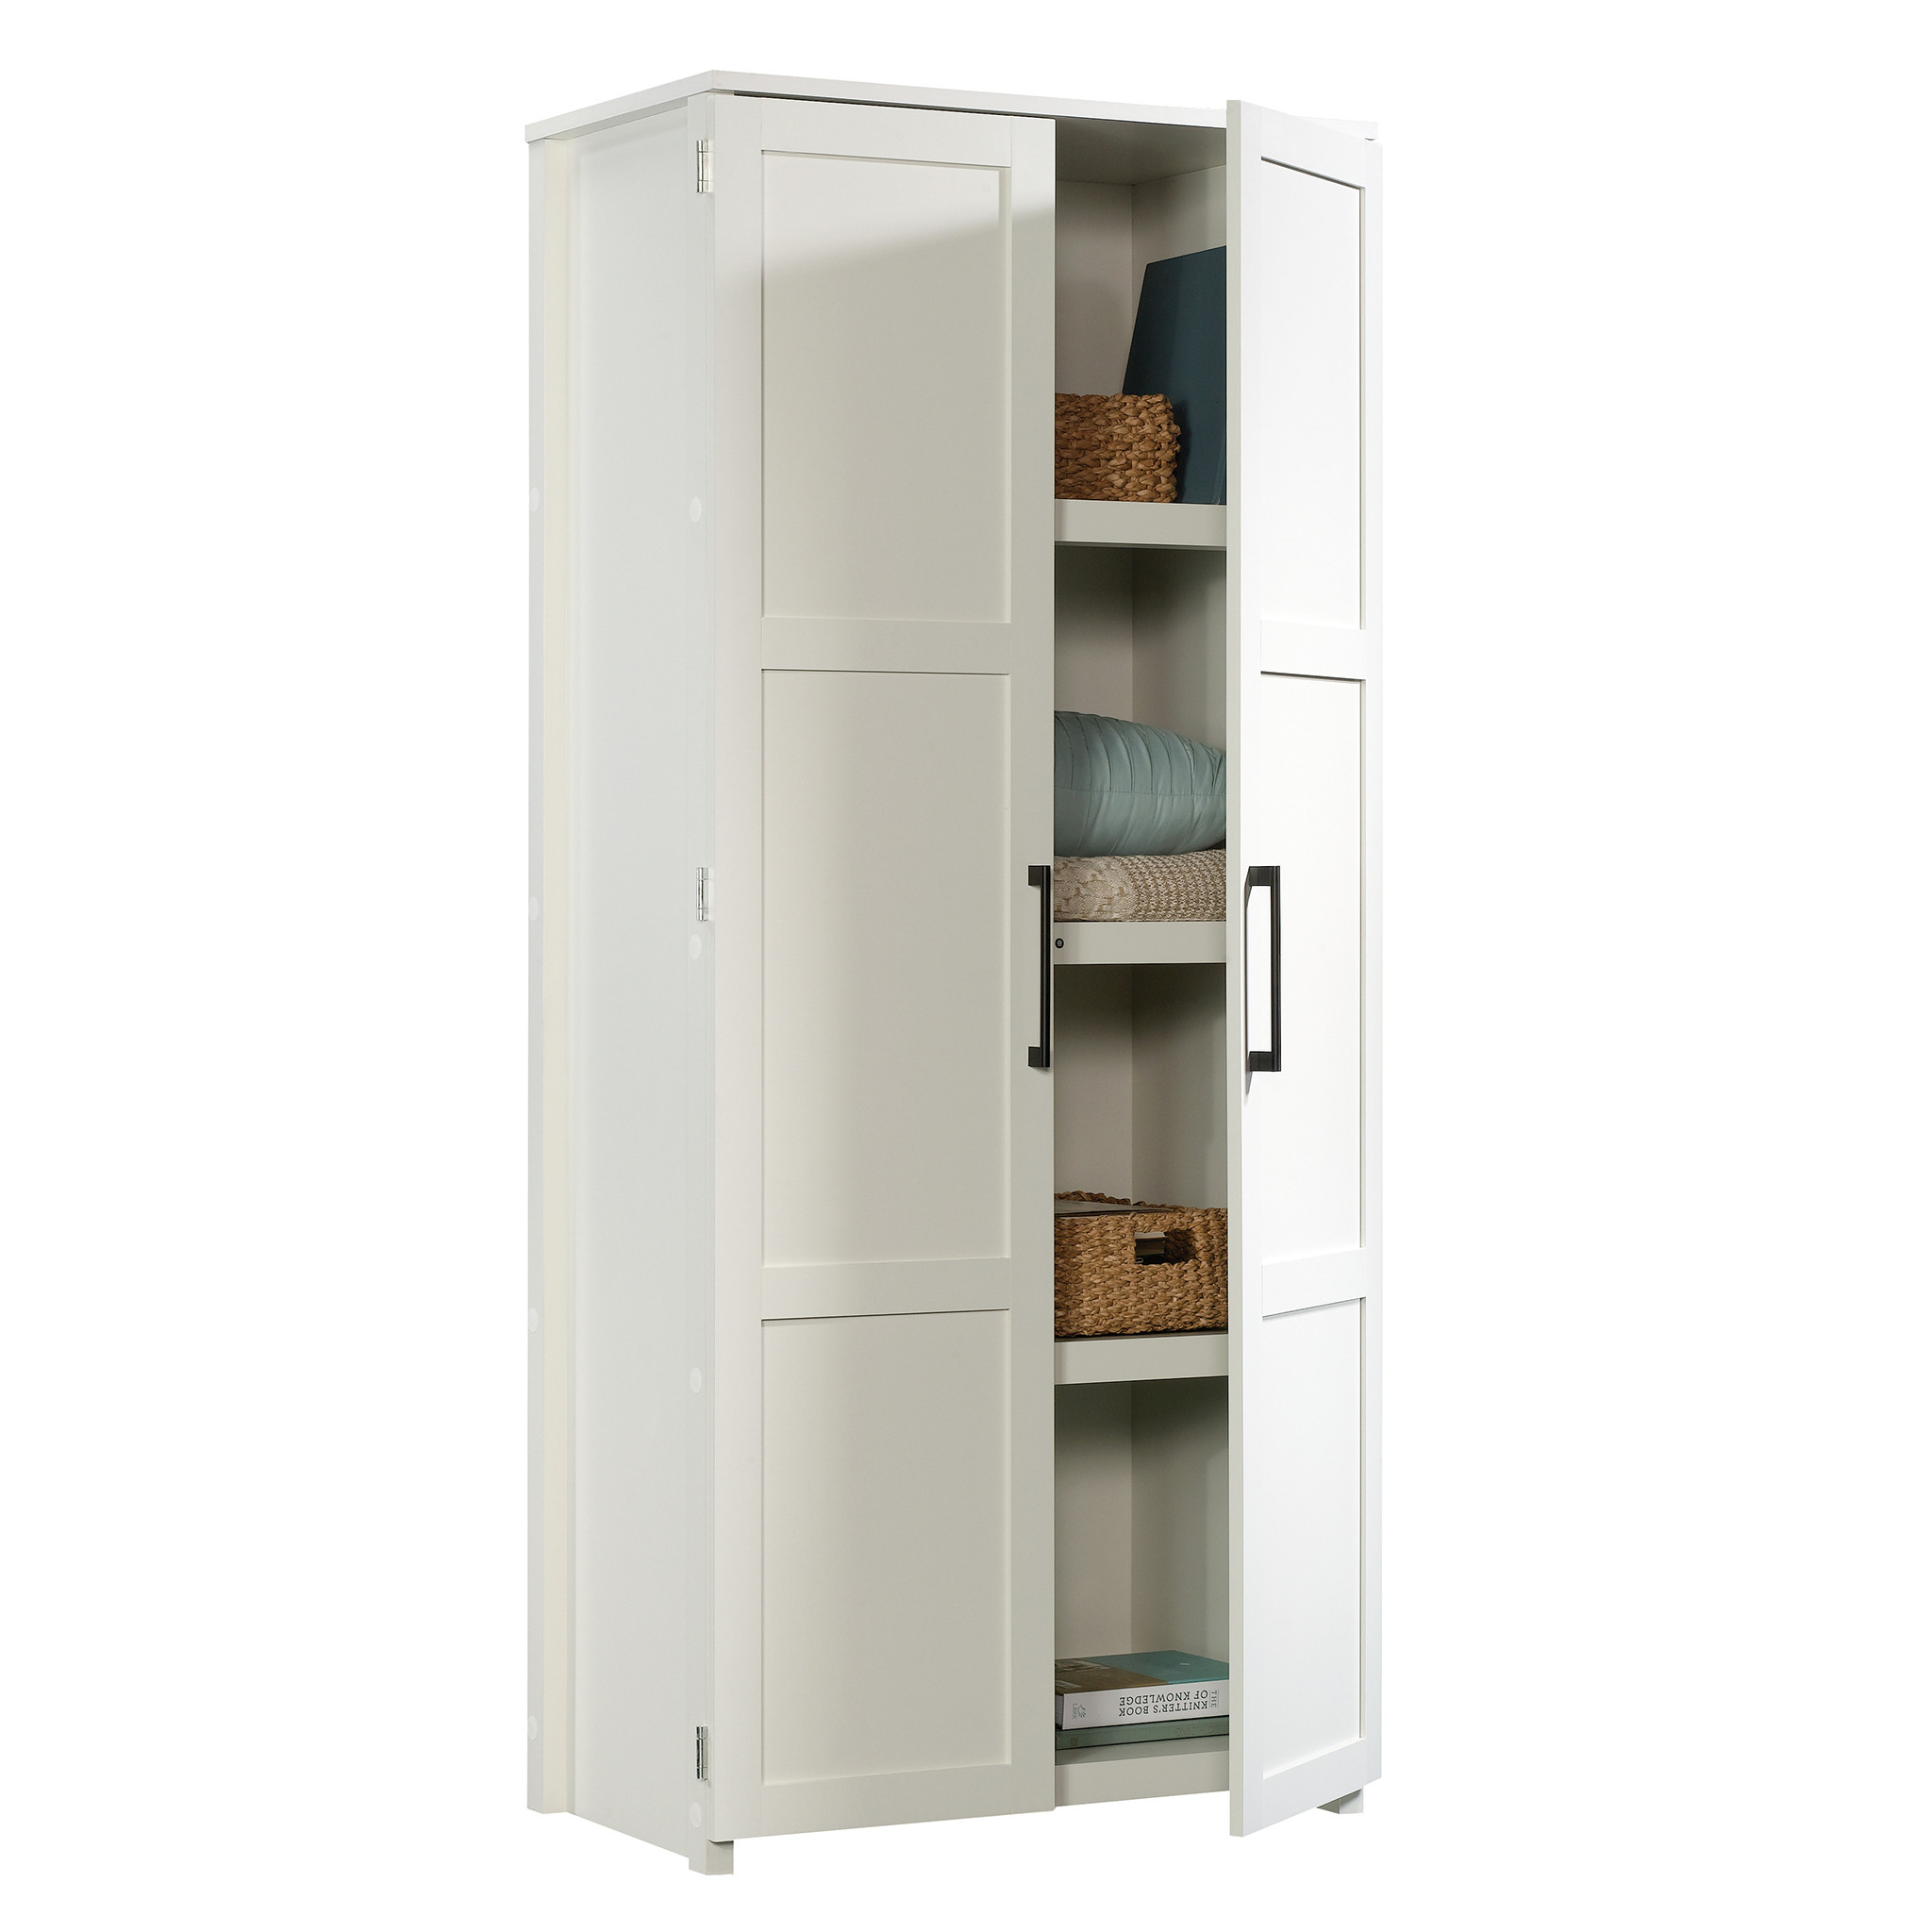 Walmart Kitchen Storage Cabinets
 Sauder HomePlus Storage Cabinet White Finish Walmart